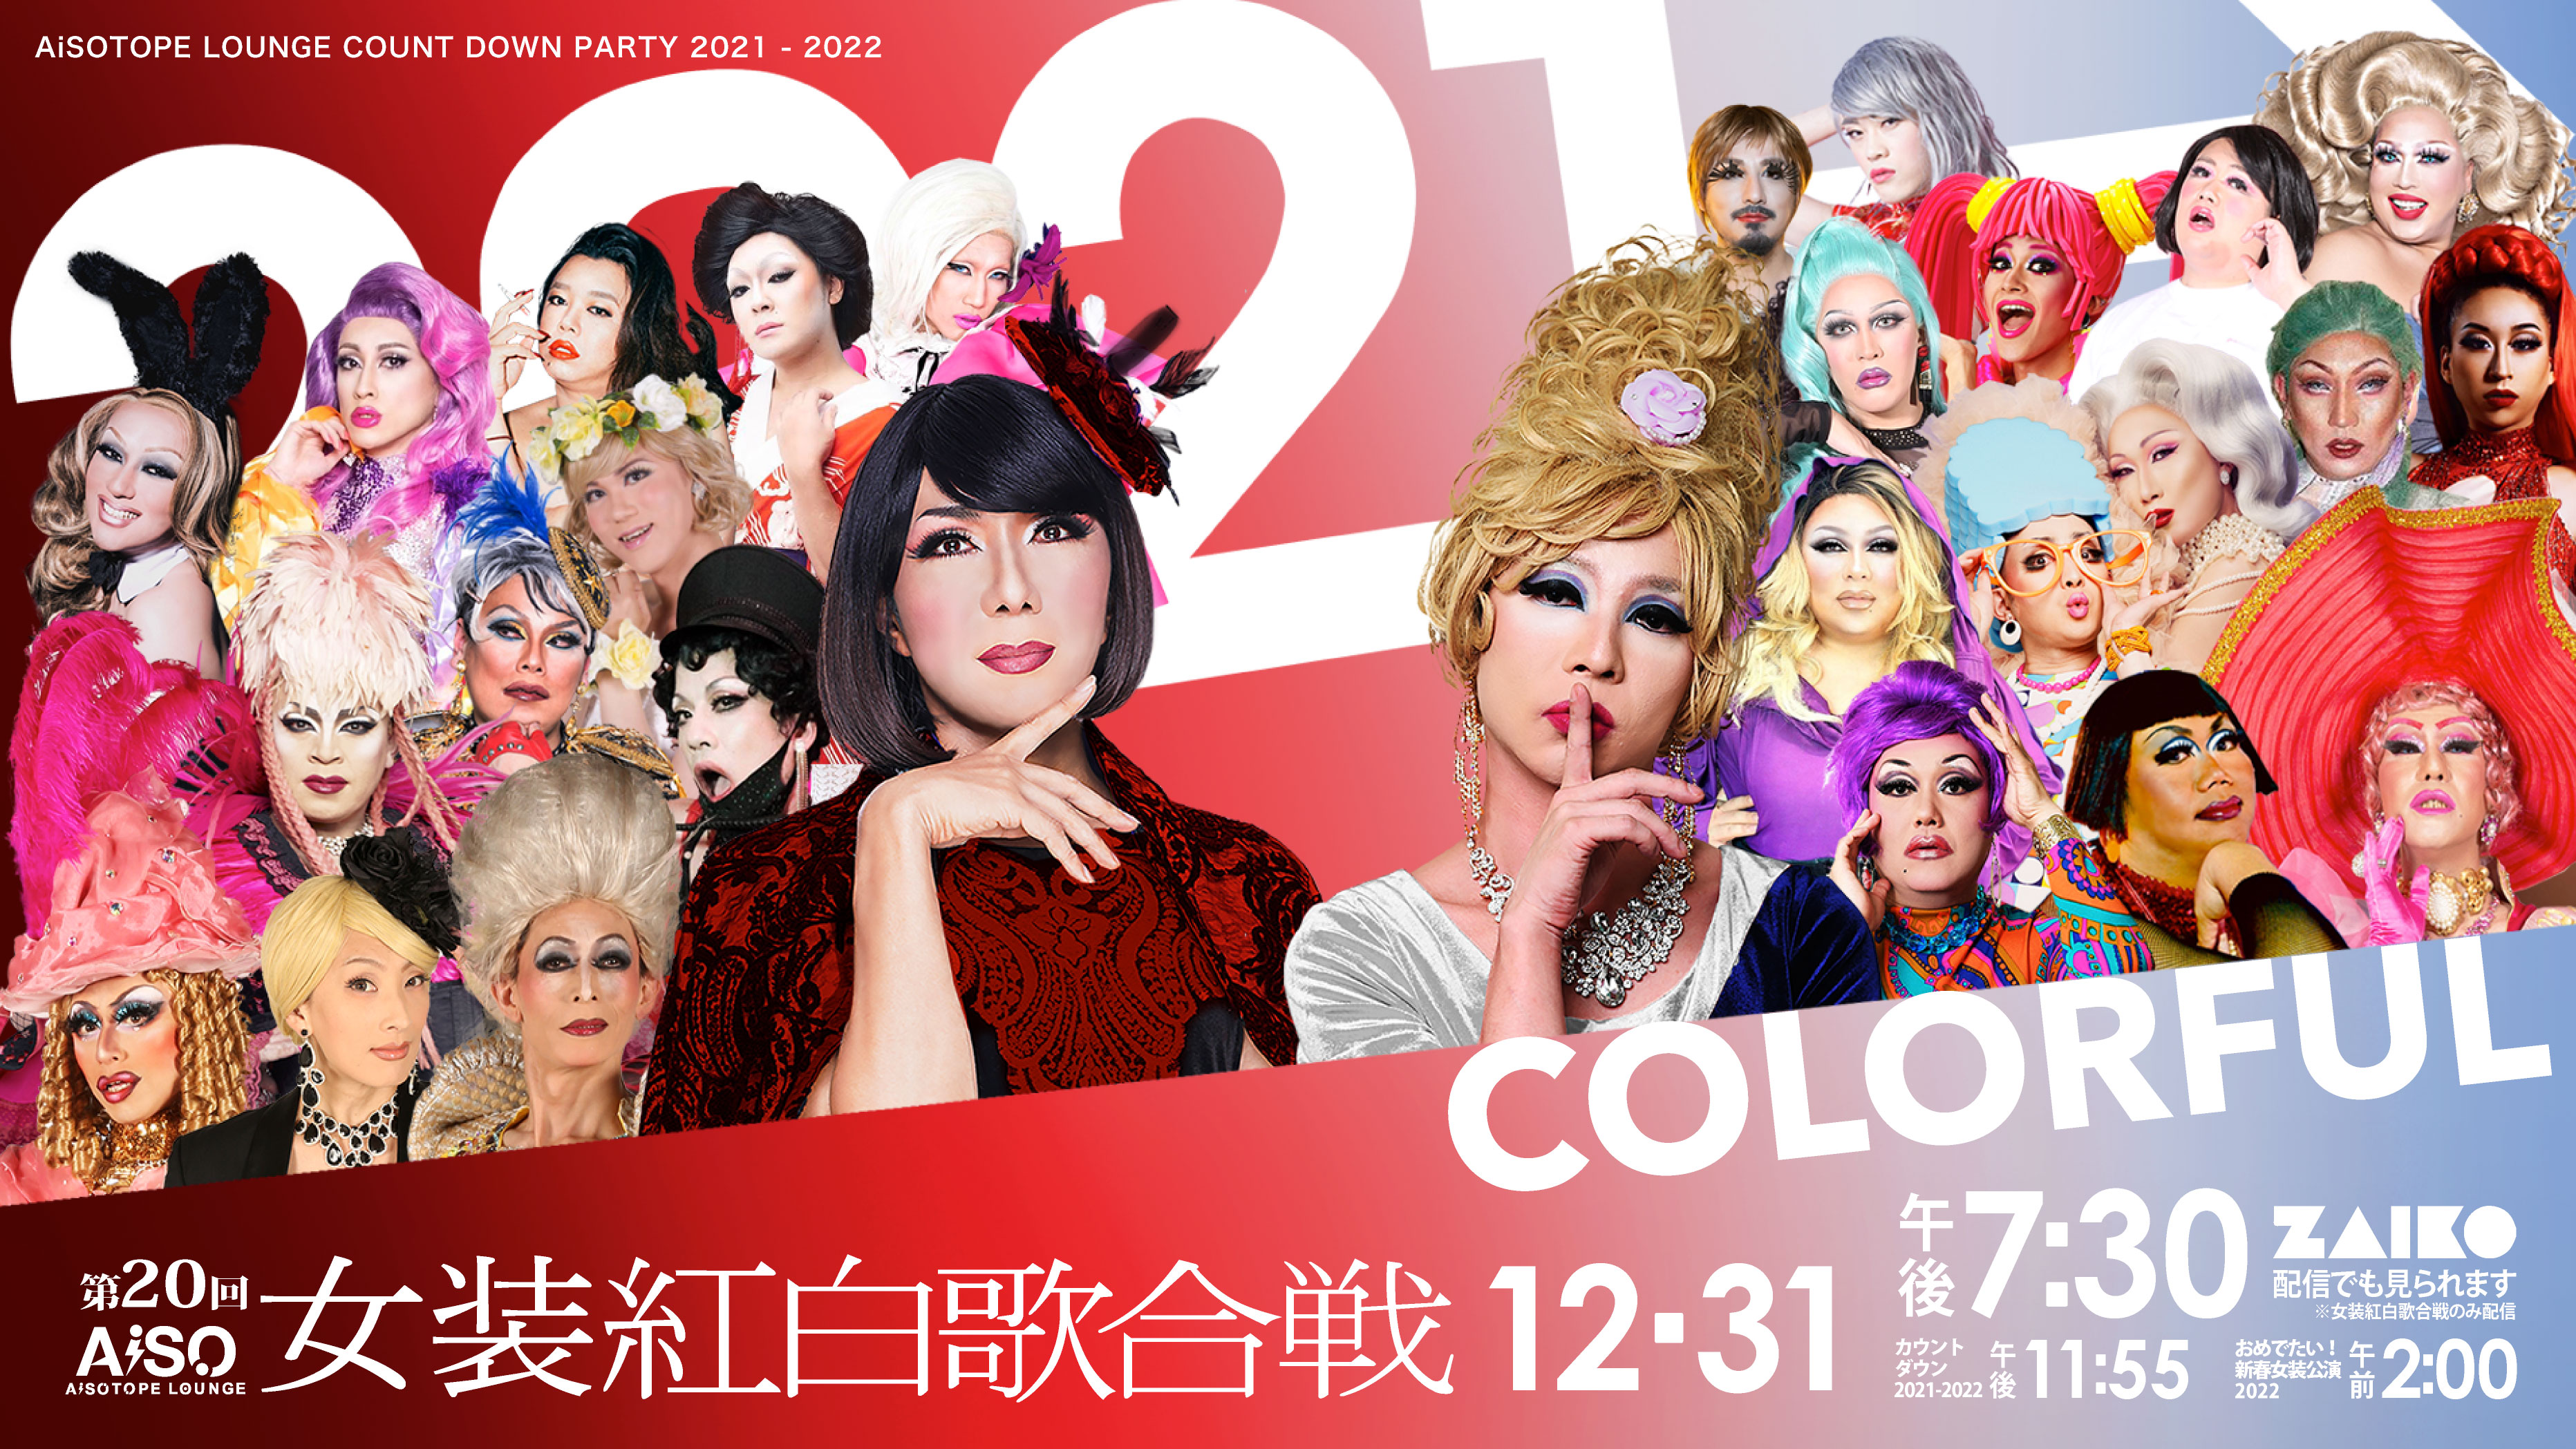 第20回 女装紅白歌合戦 “Colorful 〜カラフル〜”